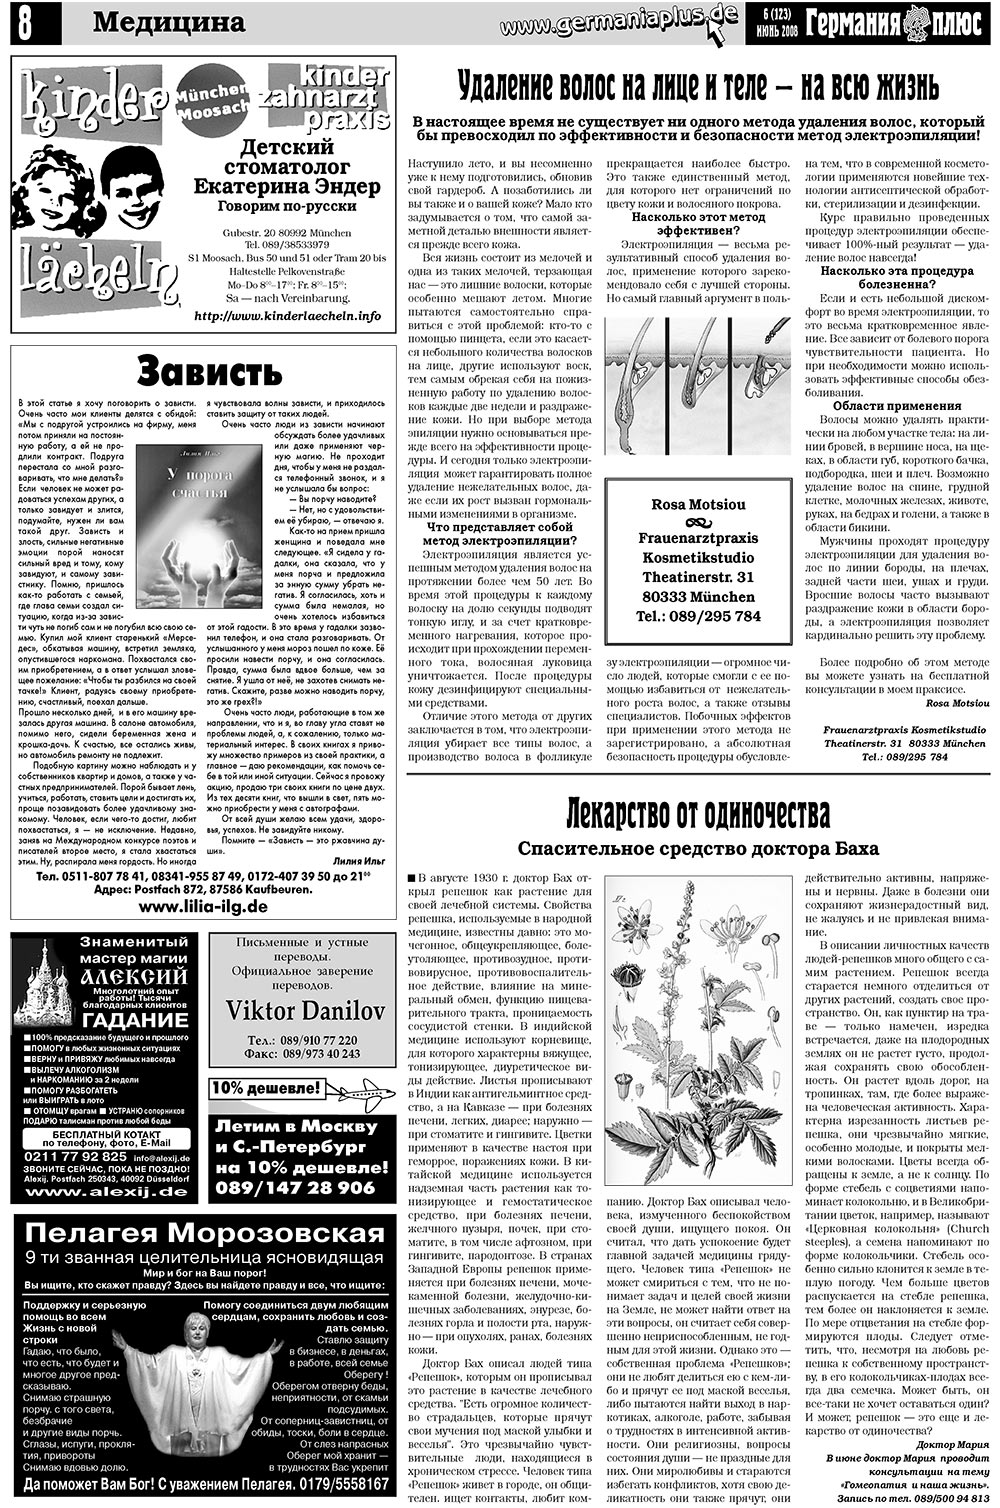 Германия плюс (газета). 2008 год, номер 6, стр. 12